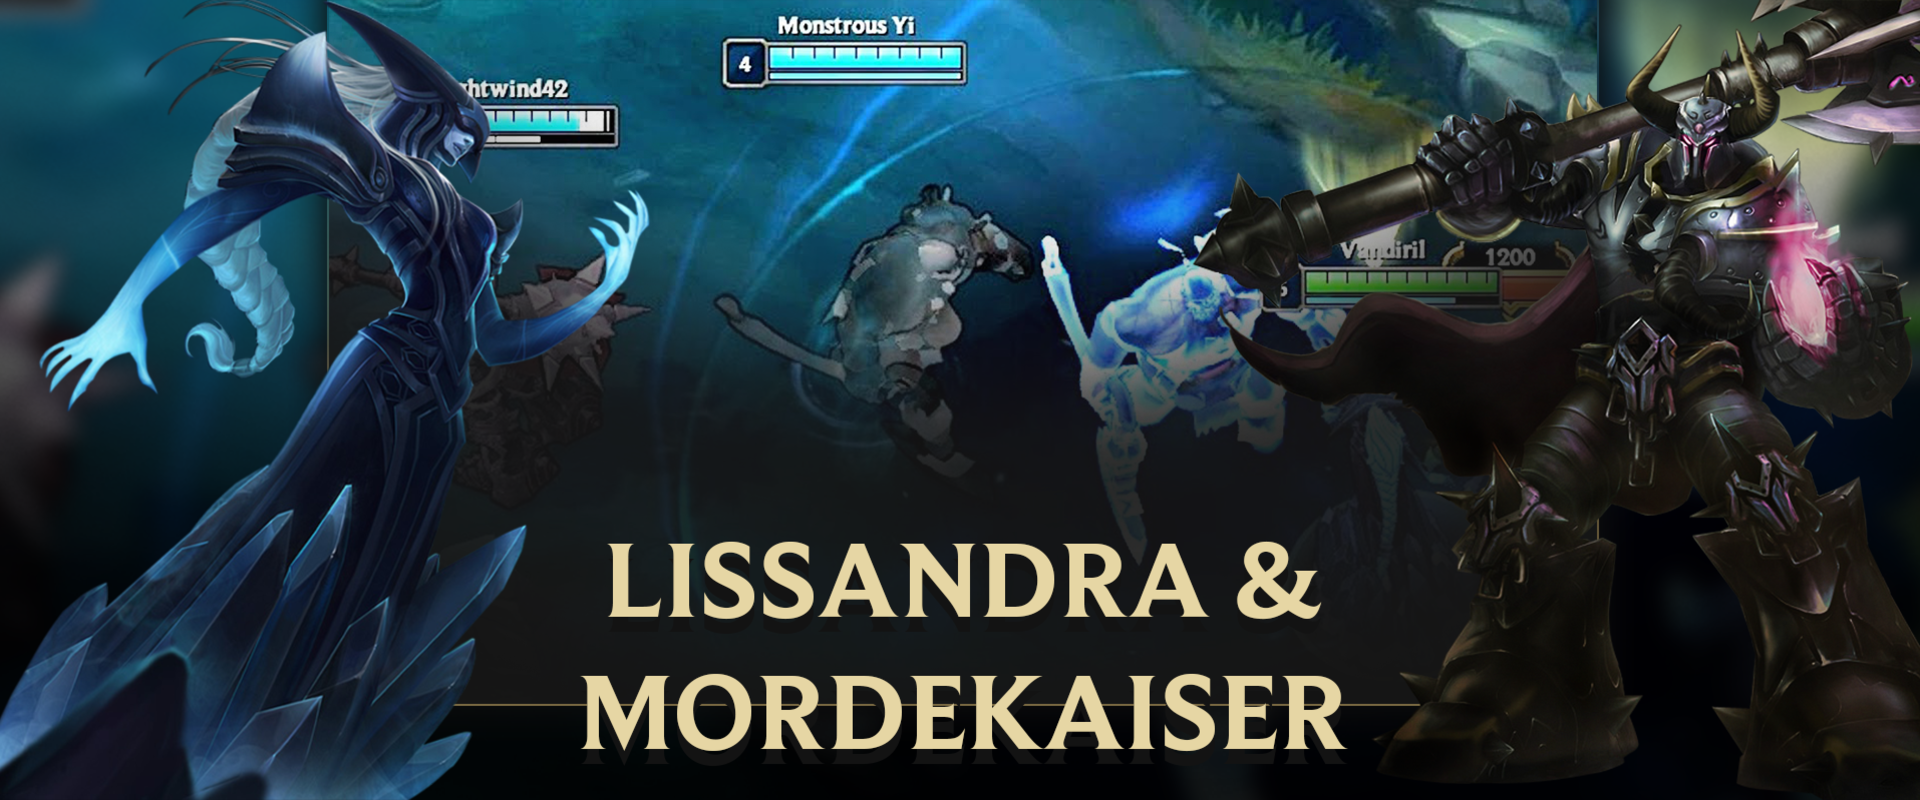 Lissandra jégszobrai bugosak Mordekaiserrel együtt - videó